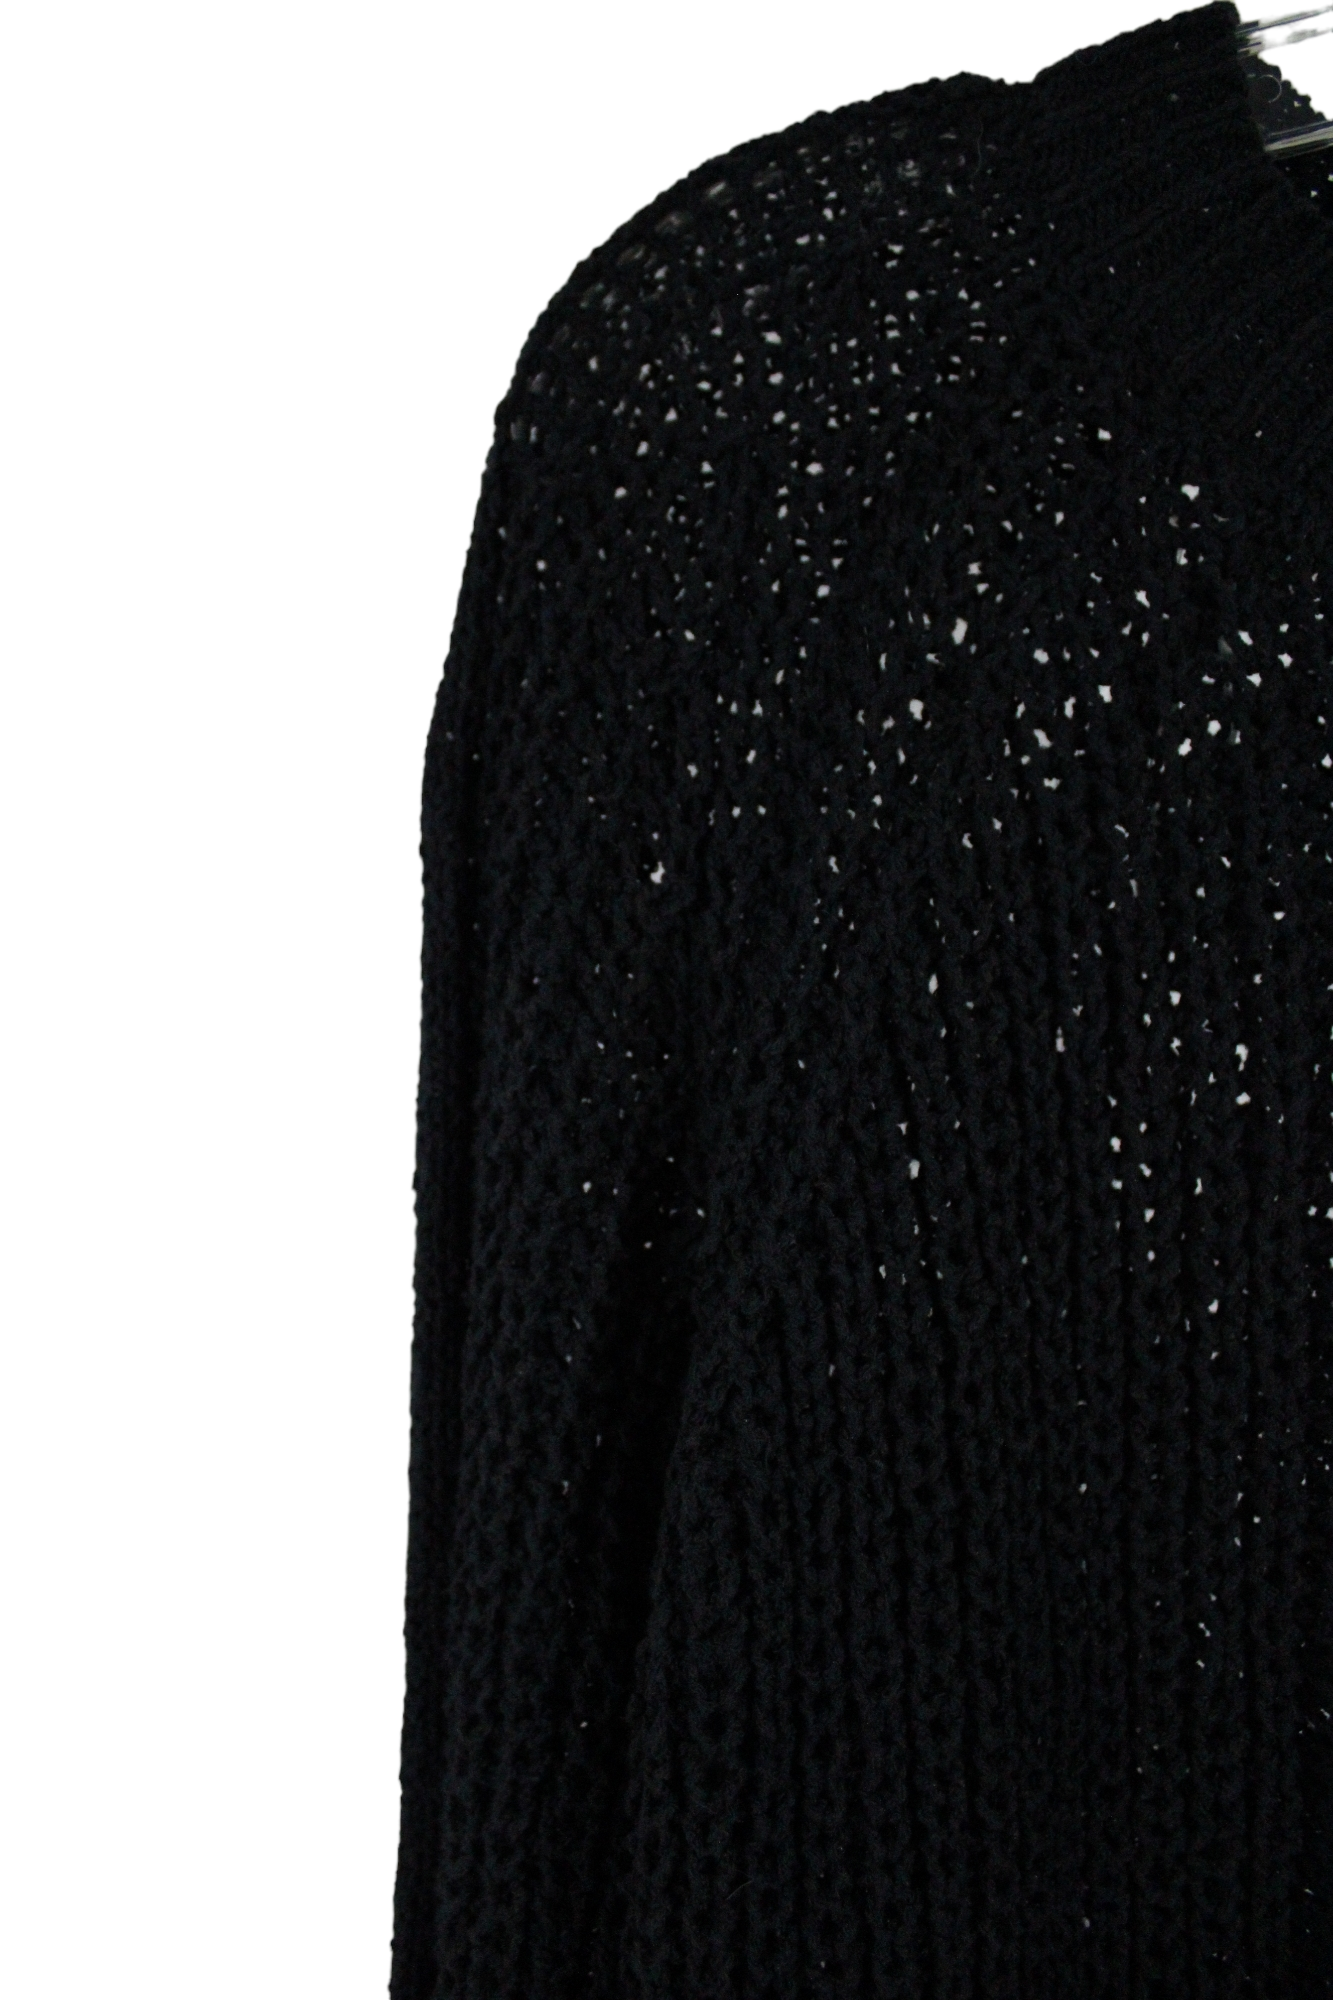 NEW Jun & Ivy Black Knit Sweater | M